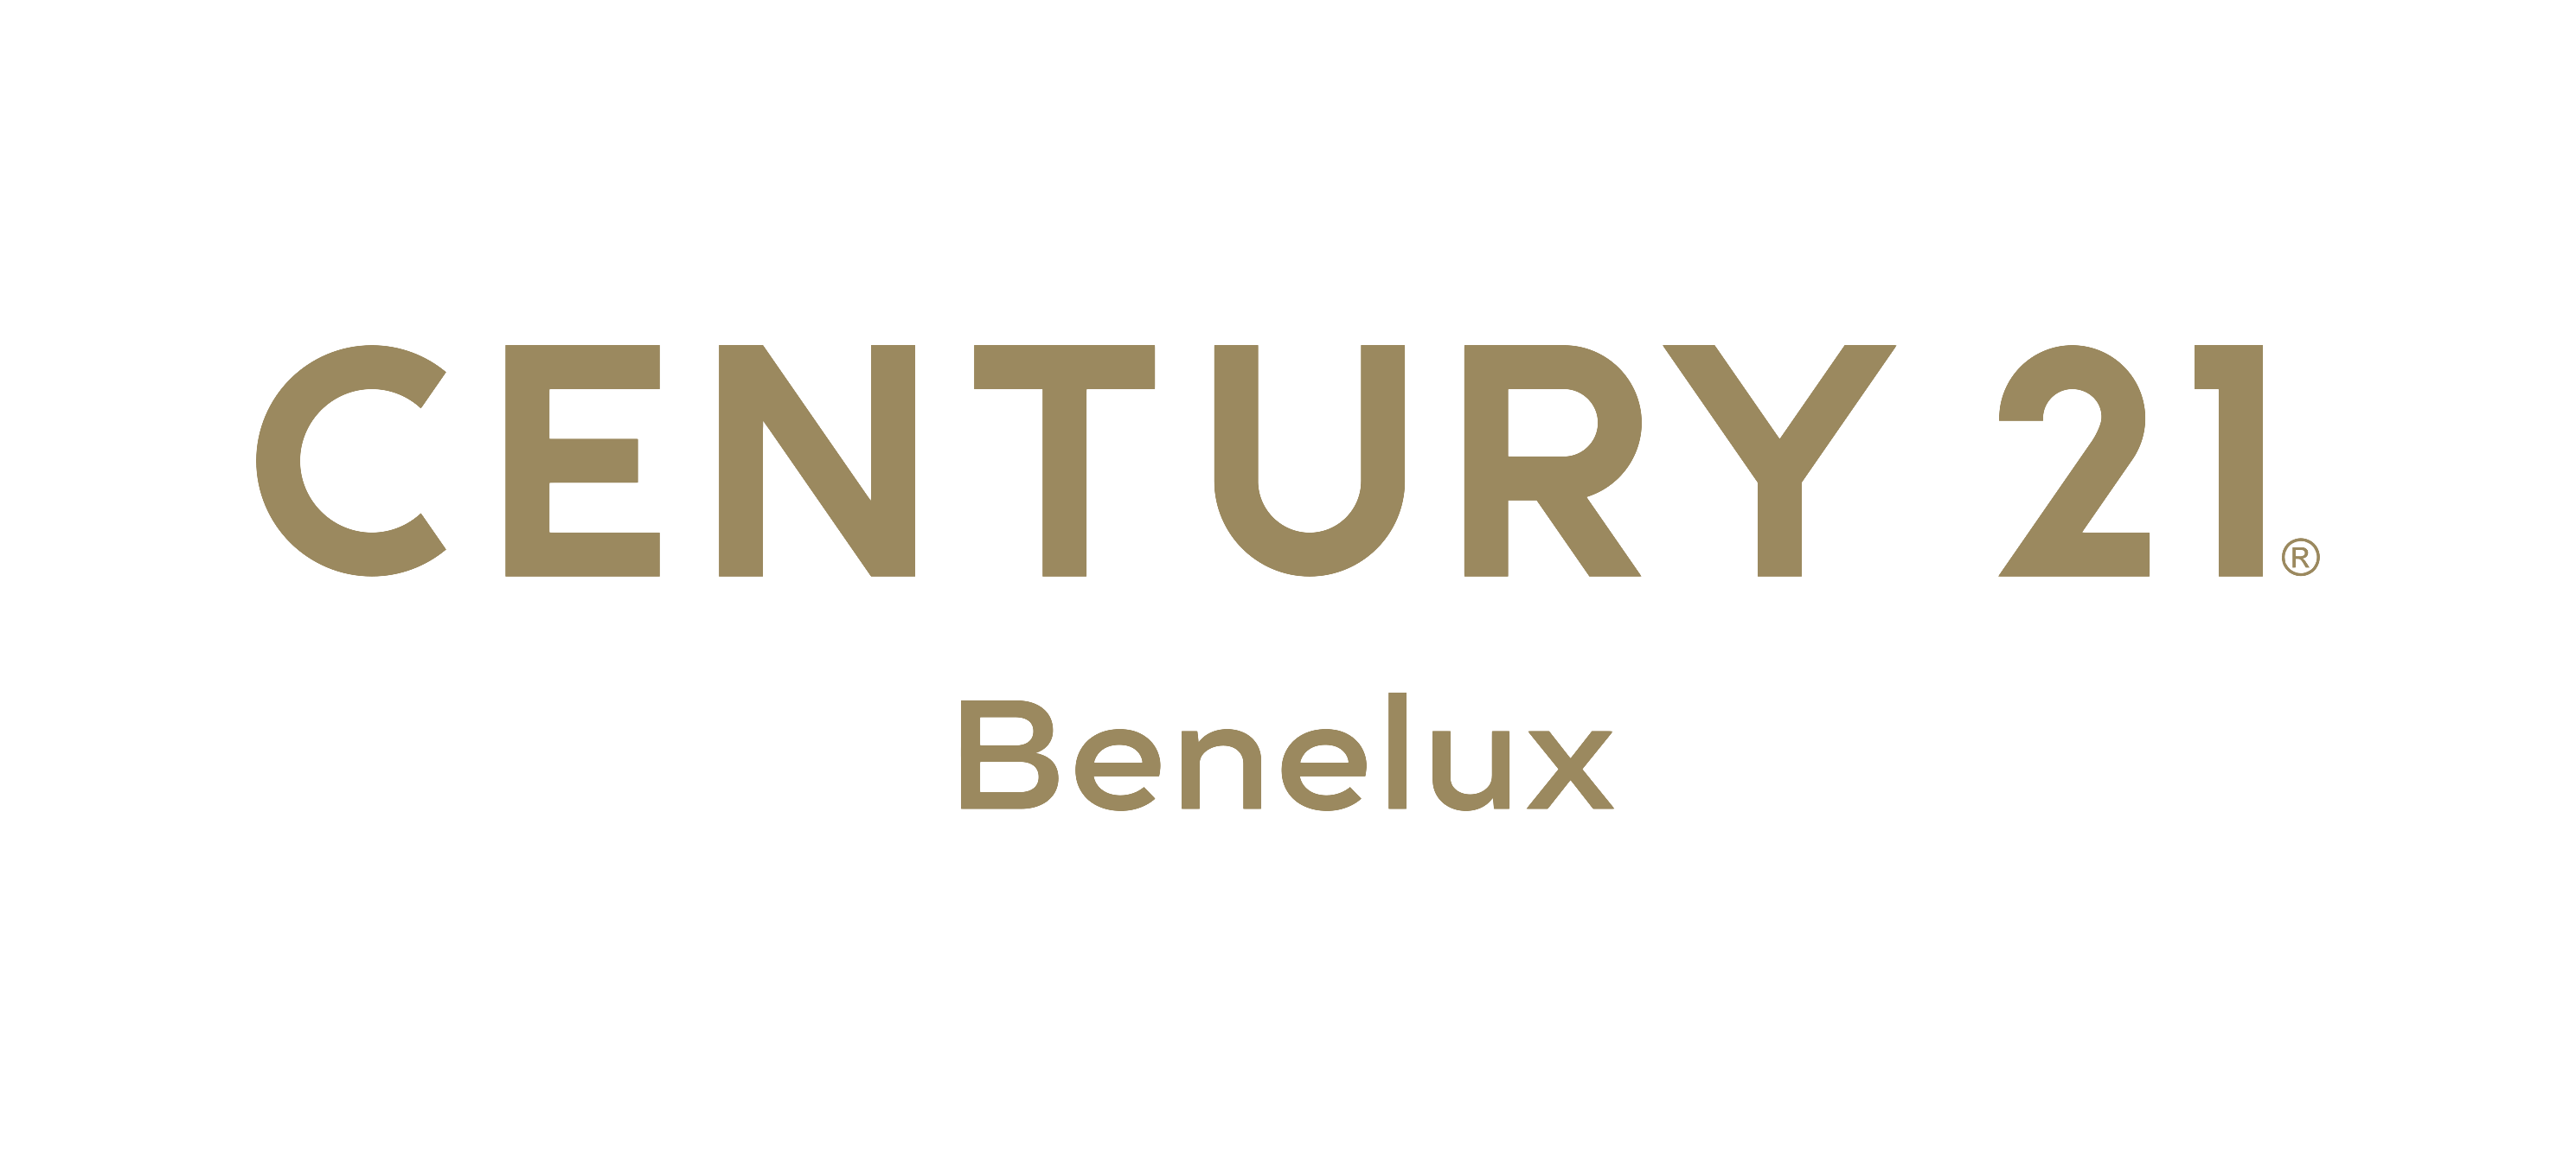 Century 21 BeNeLux logo